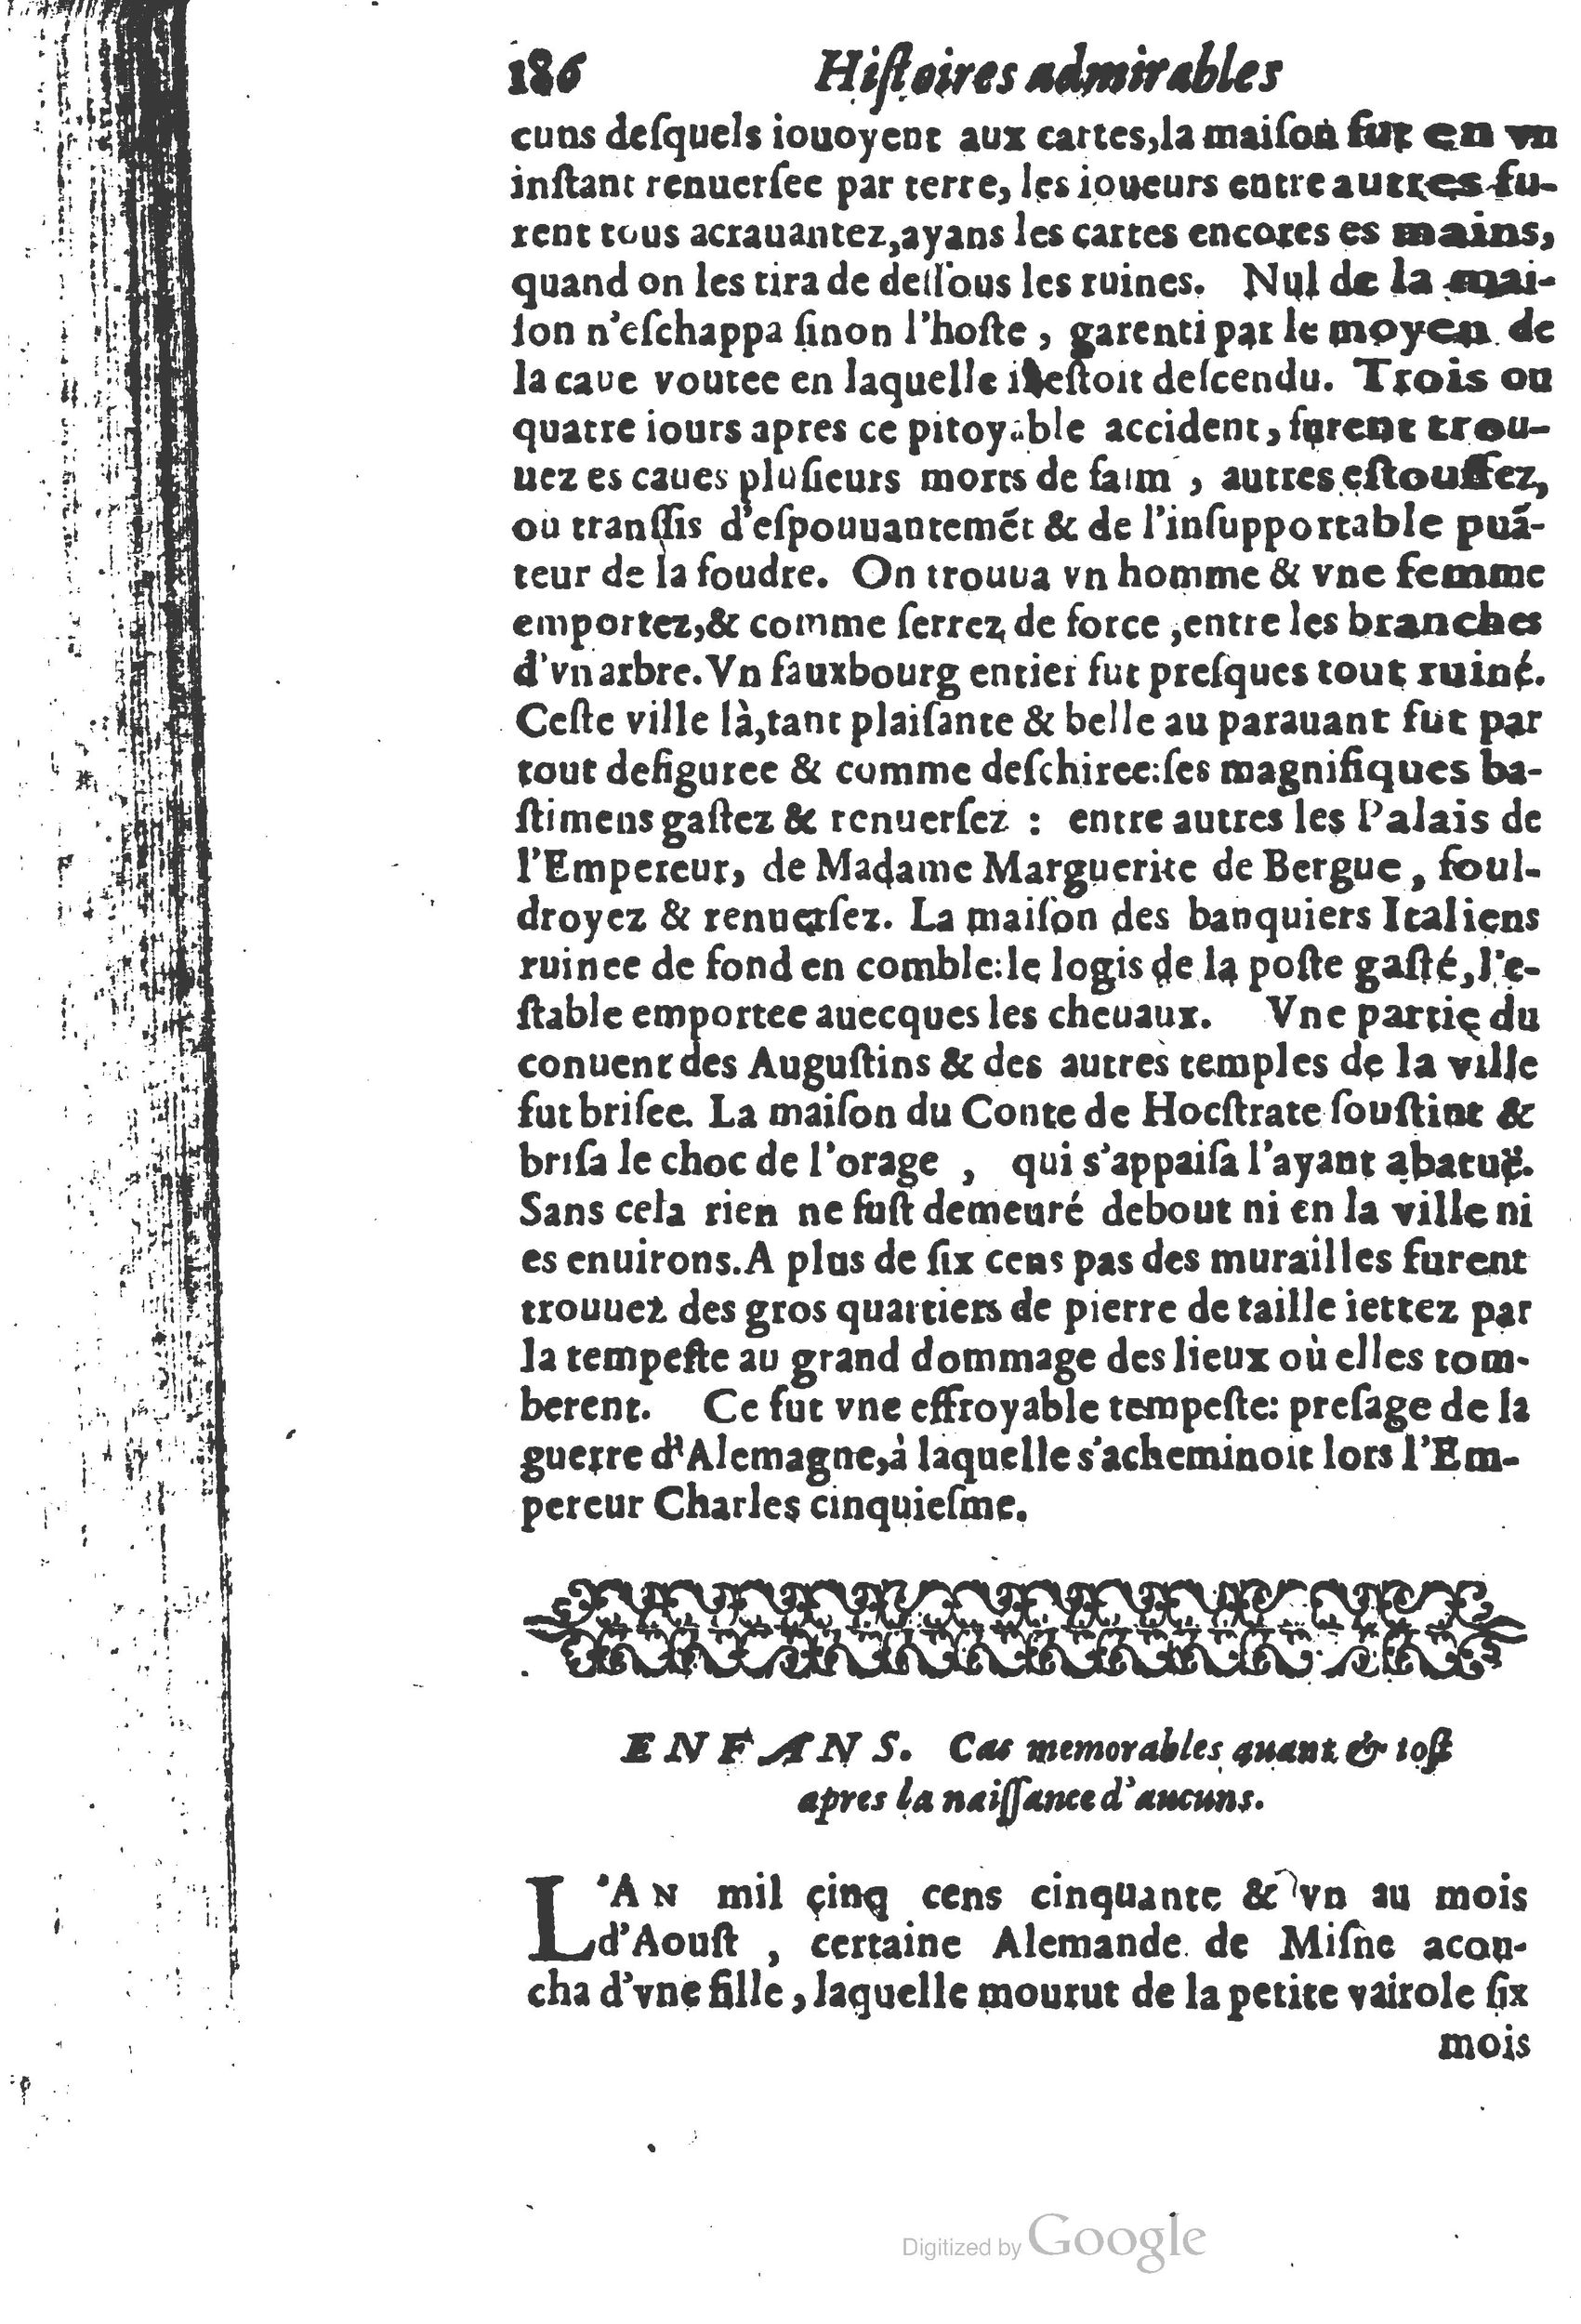 1610 Trésor d’histoires admirables et mémorables de nostre temps Marceau Princeton_Page_0207.jpg